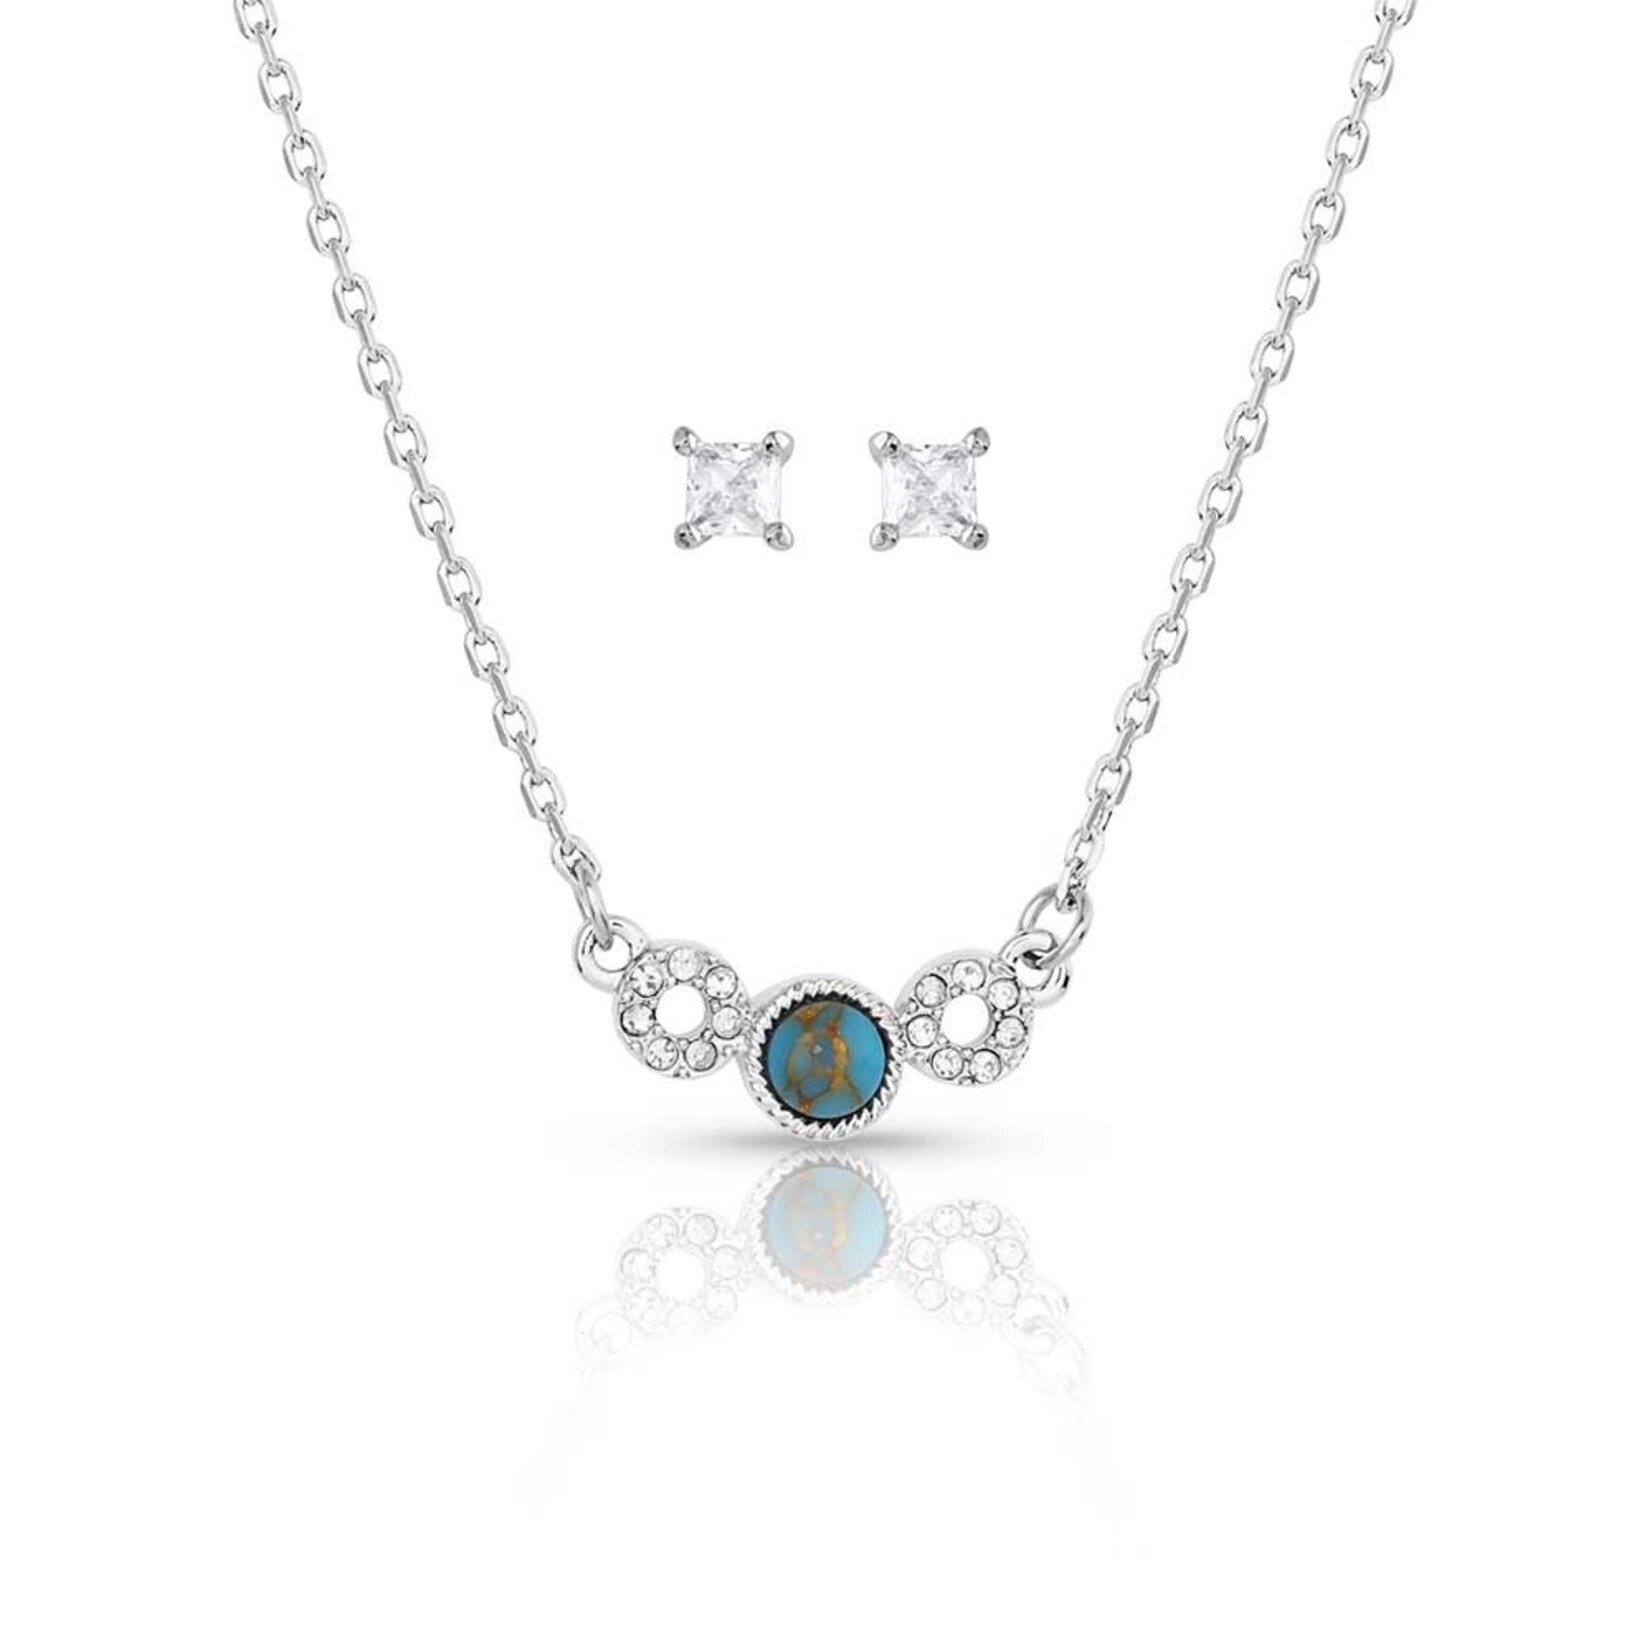 Montana Silversmiths Montana Silversmith JS5718 Graceful Balance Turquoise Crystal Jewelry Set